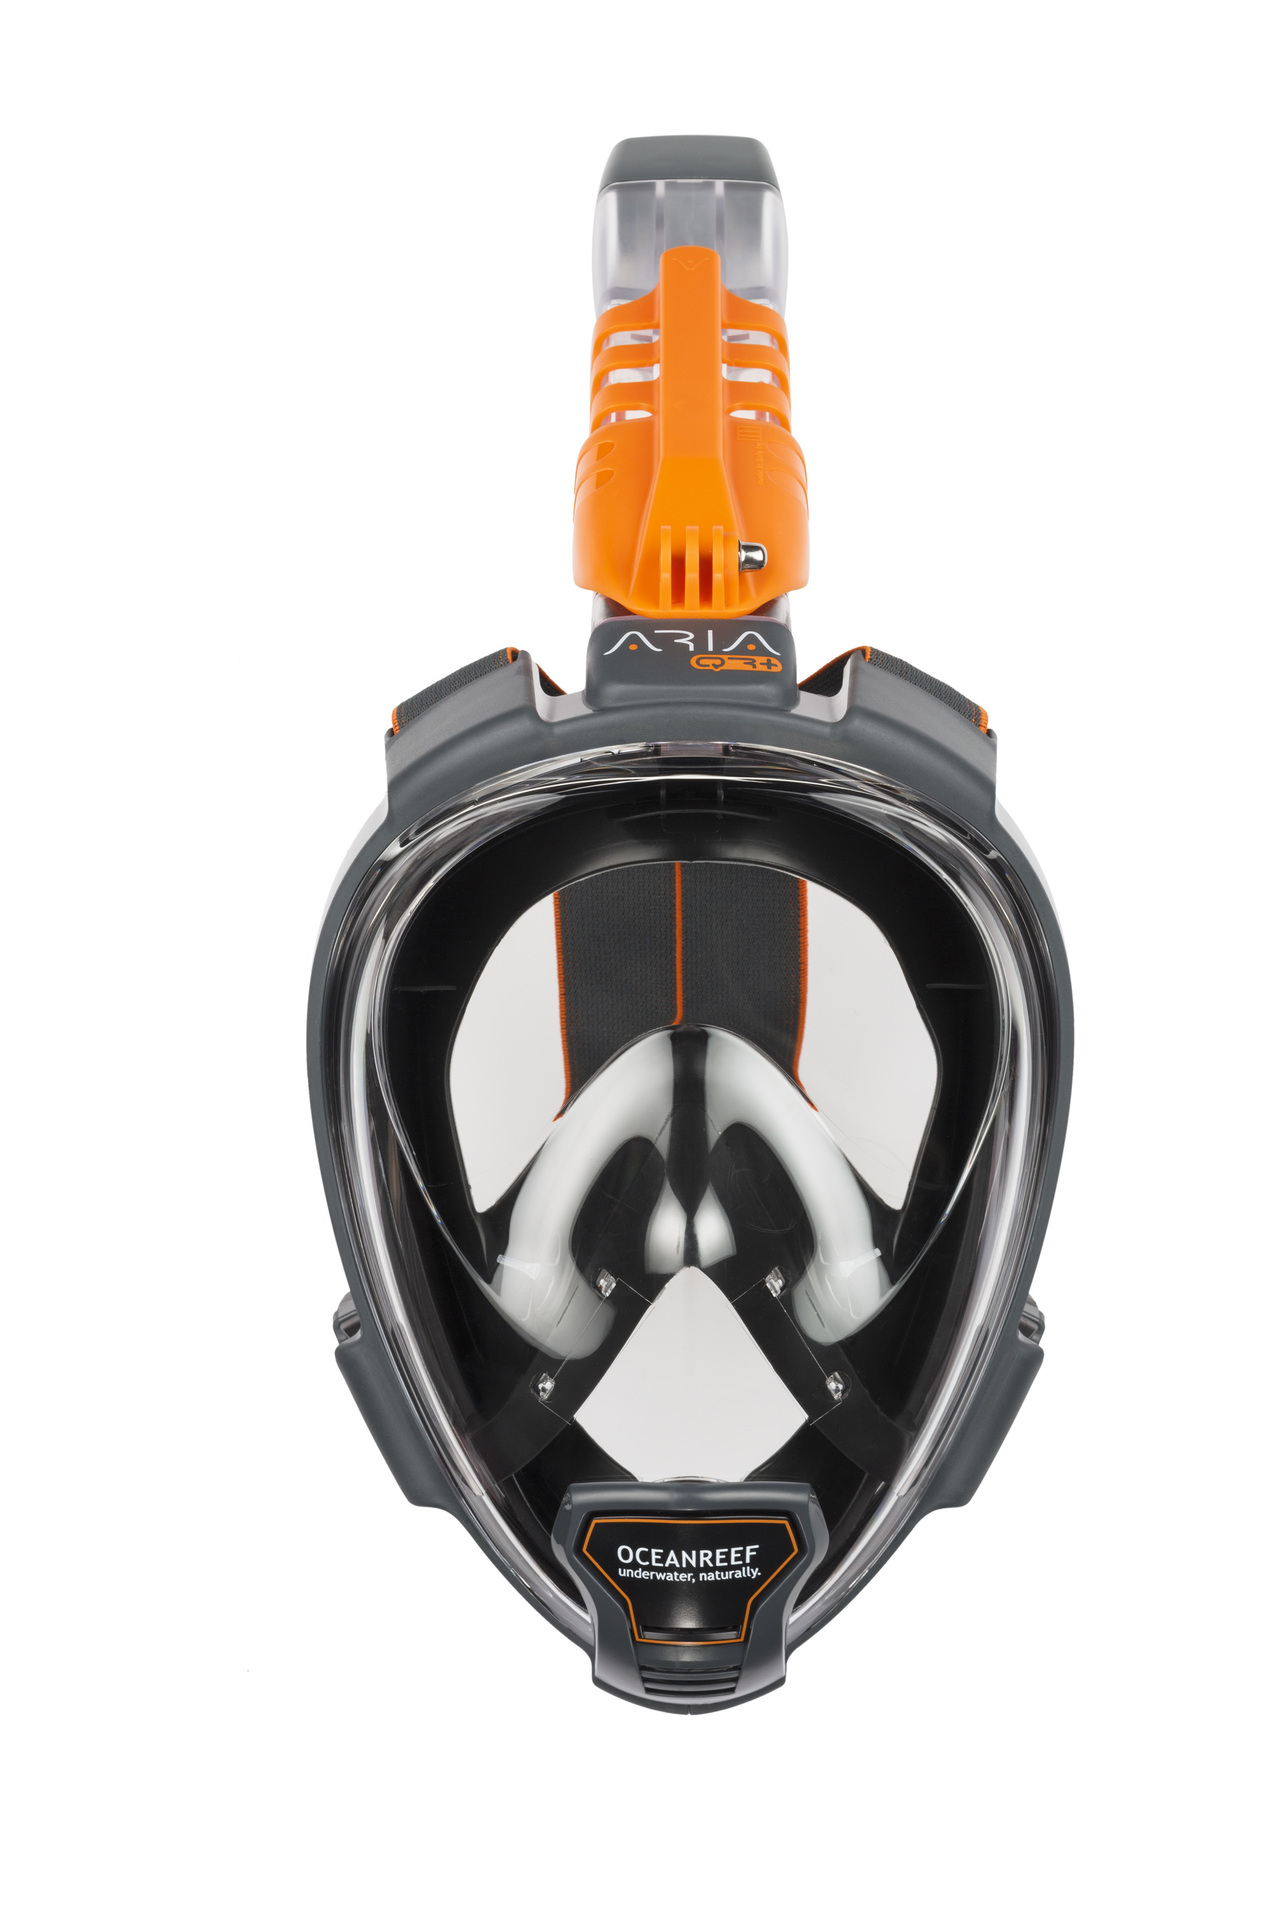 5 Colori e 3 Taglie Diverse Aria QR+ Maschera Snorkeling Integrale a Rilascio Rapido con Boccaglio Visione Subacquea a 180 Gradi e Meccanismo Quick Release OCEAN REEF 